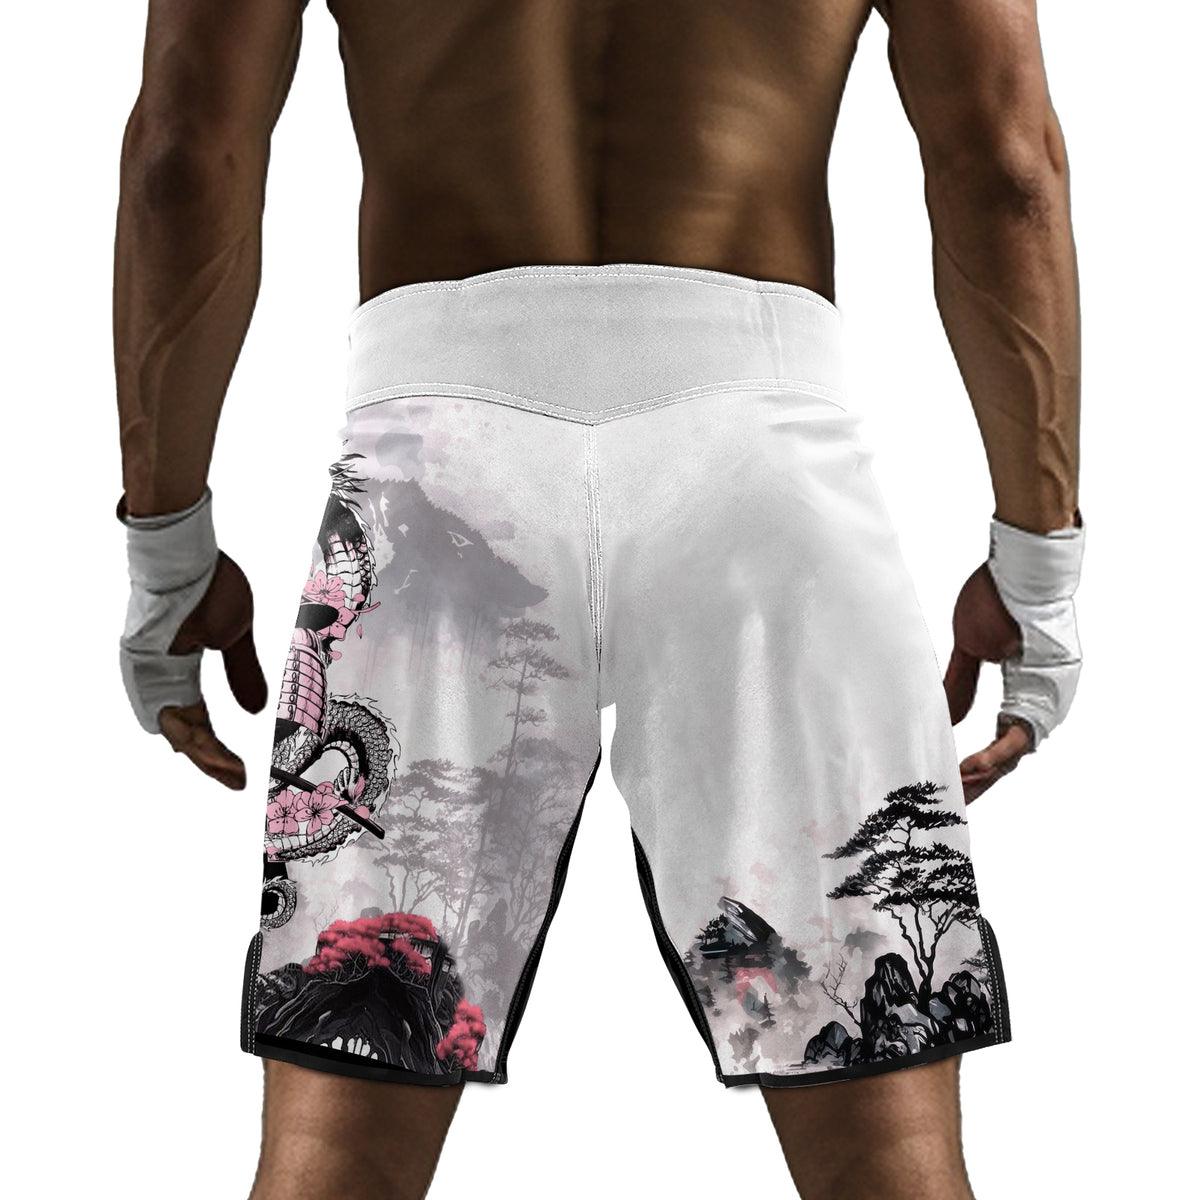 Rashninja Samurai Mask Embraced Men's Fight Shorts - Rashninja LLC